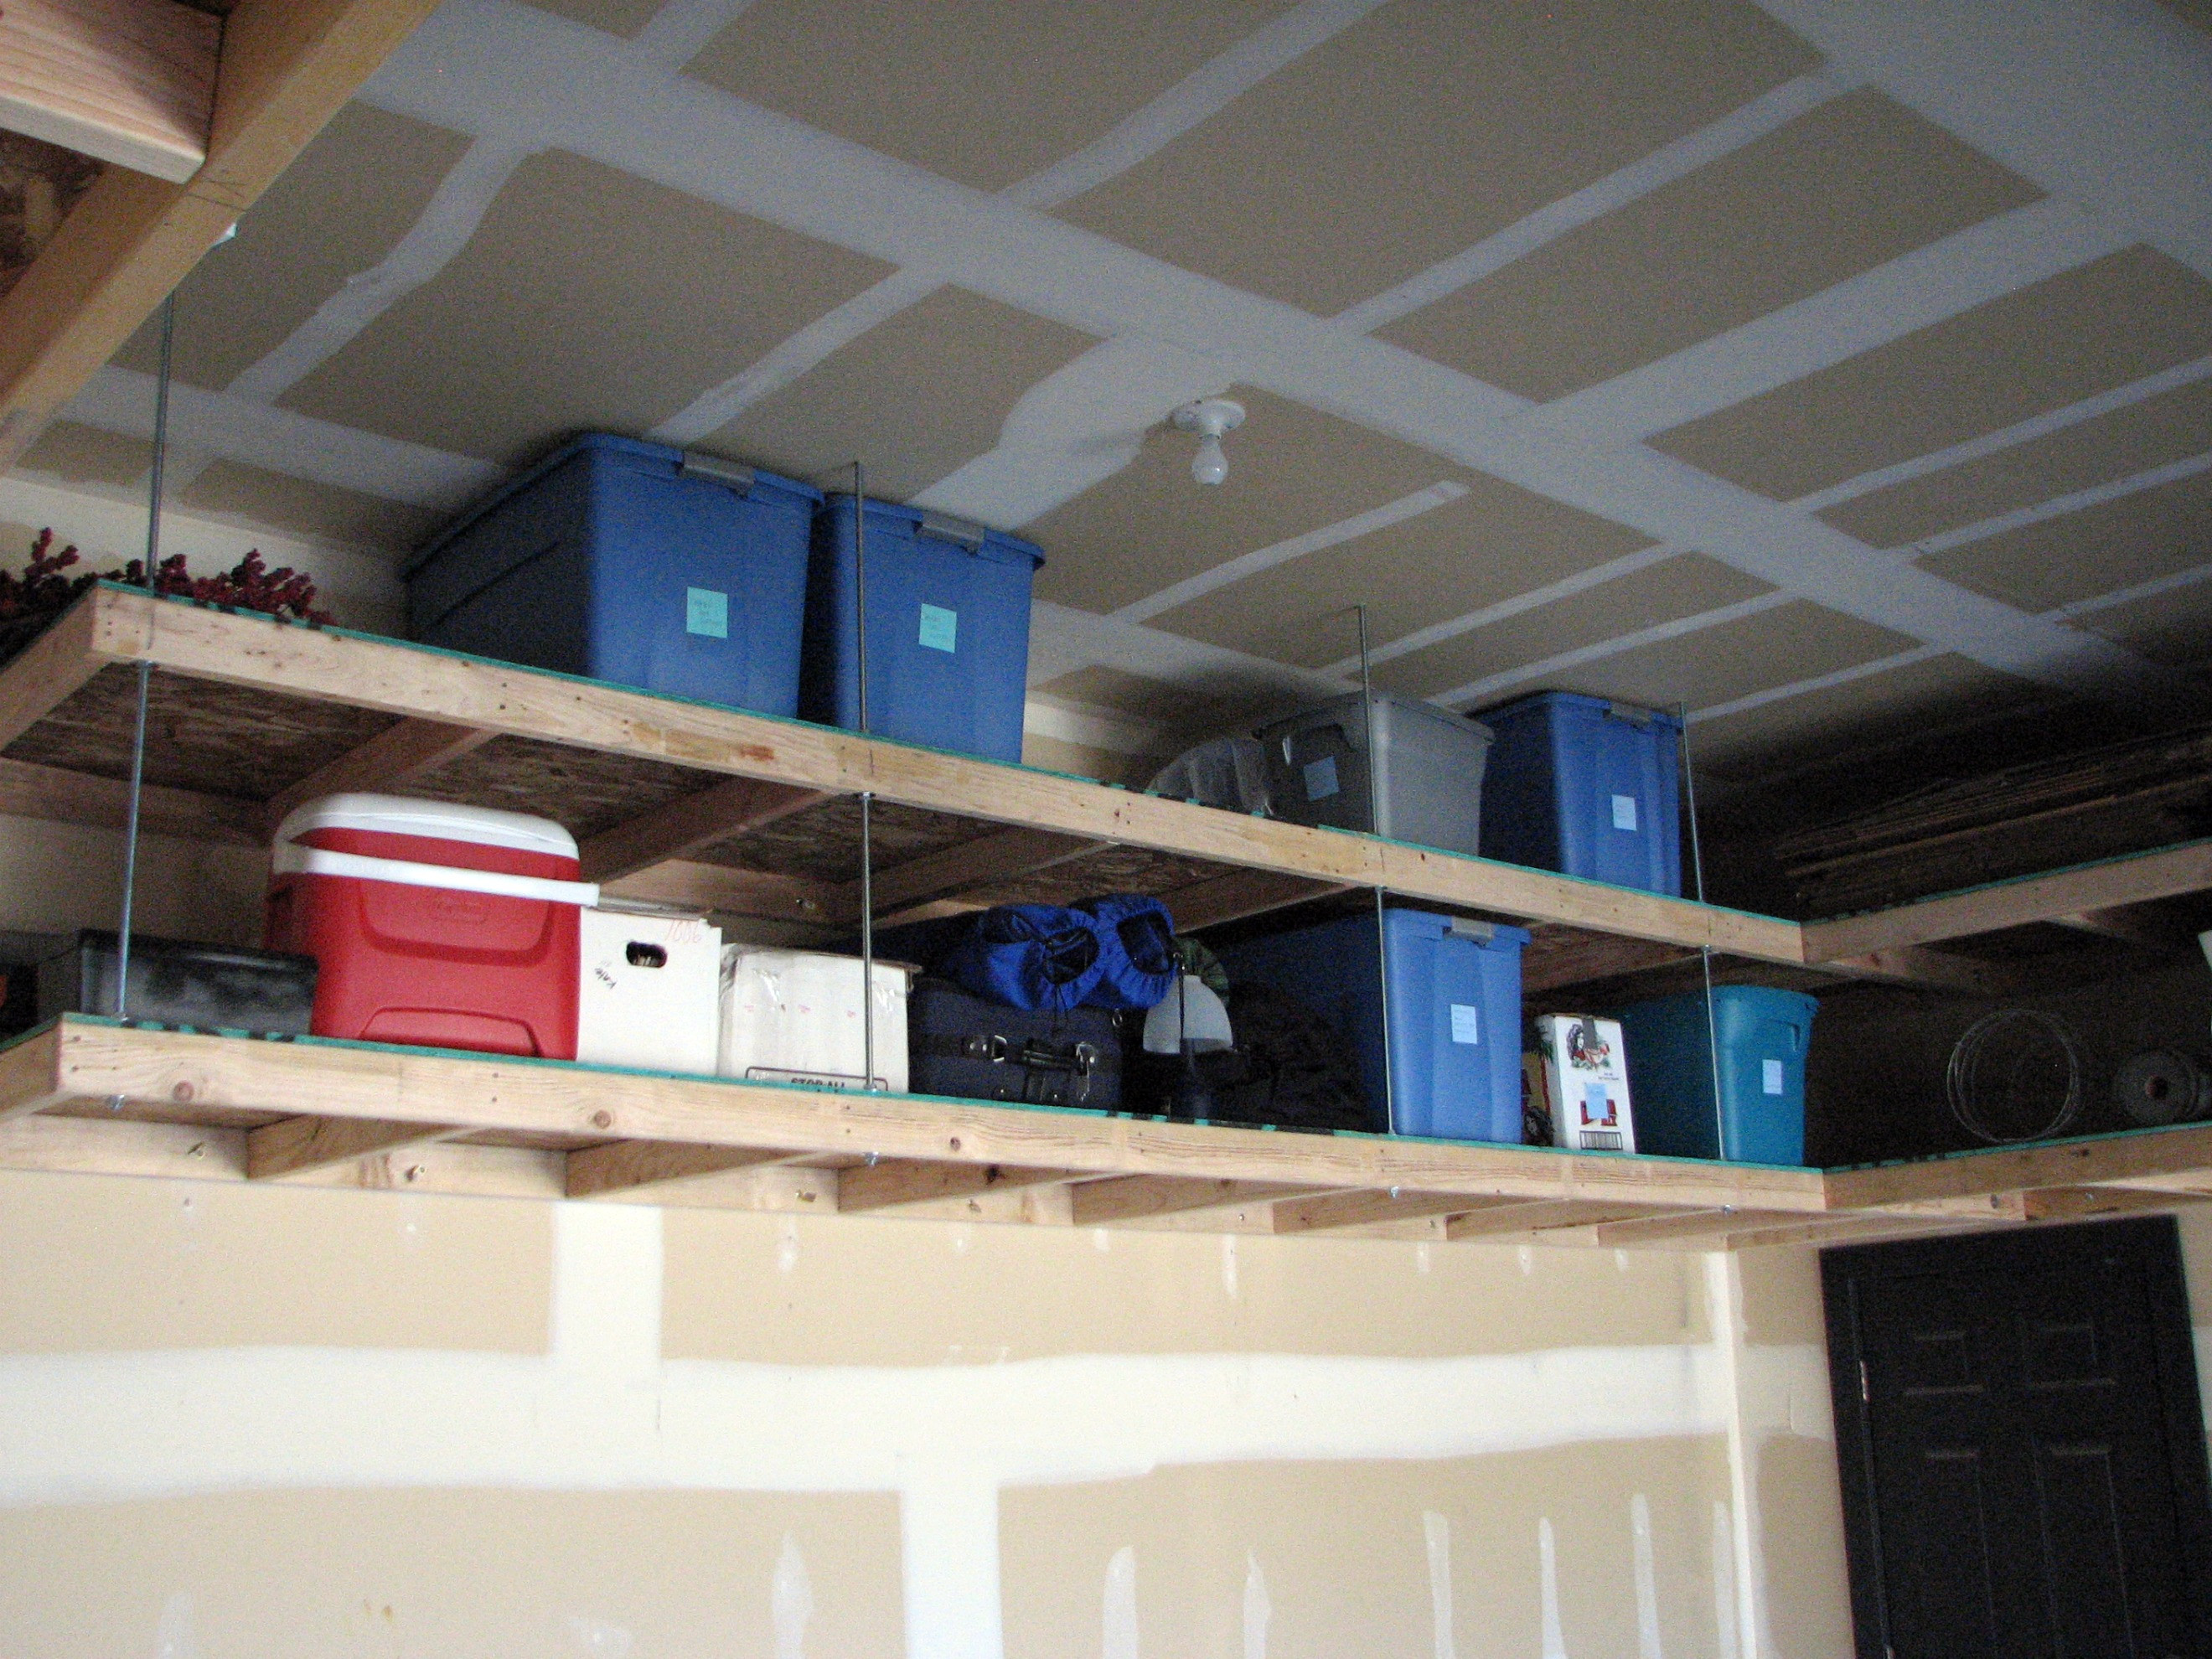 Best ideas about DIY Overhead Garage Storage
. Save or Pin Genius Garage Organization Hacks Now.